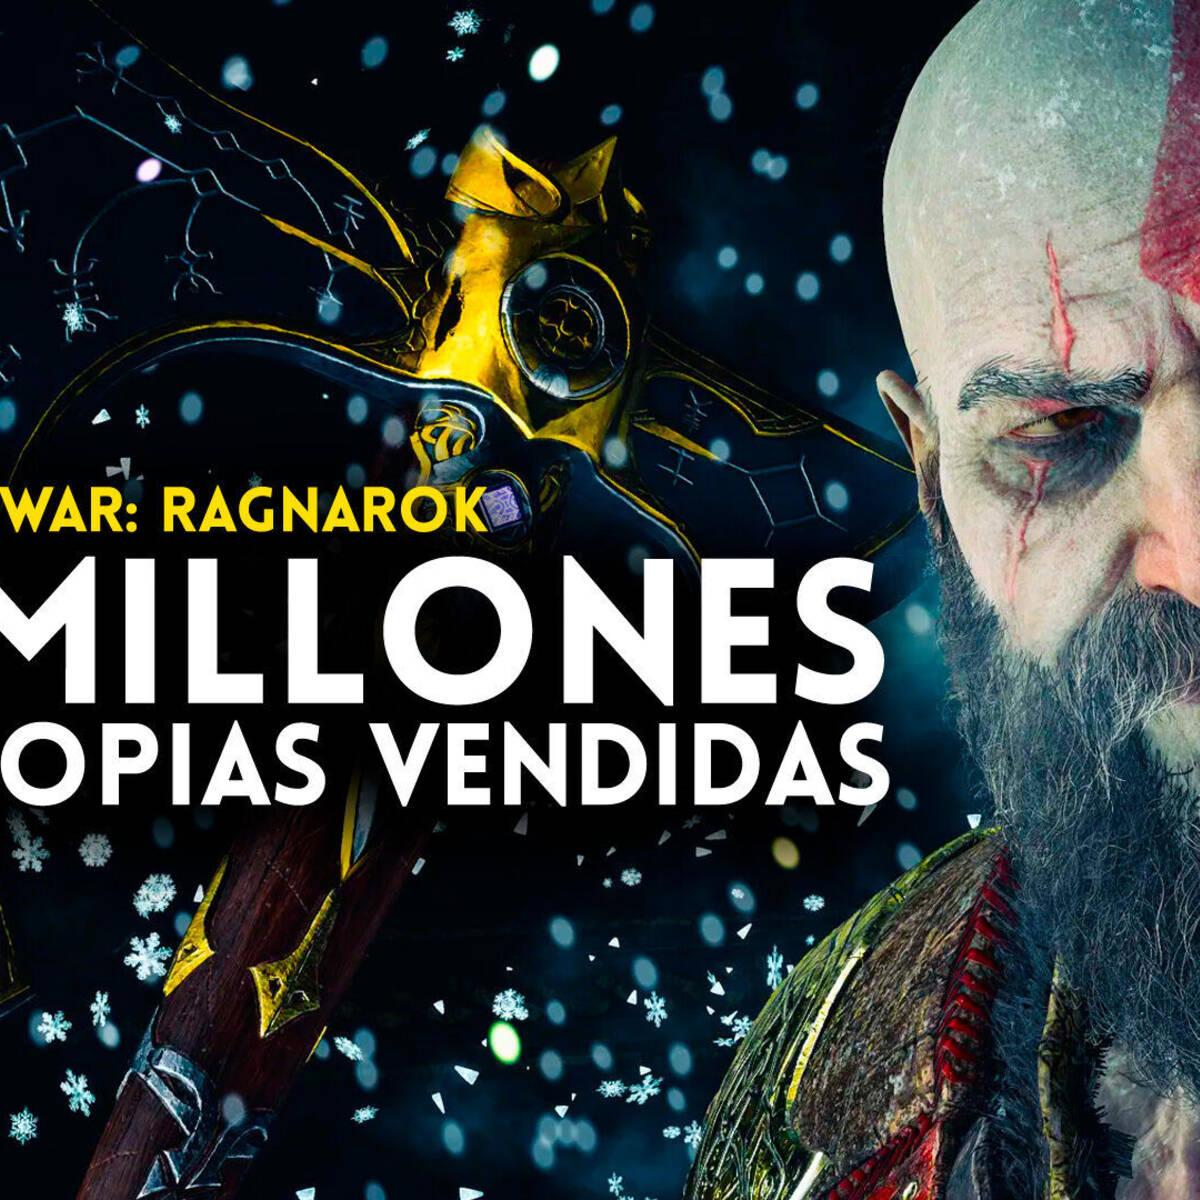 God of War Ragnarok bate recorde de unidades vendidas na primeira semana